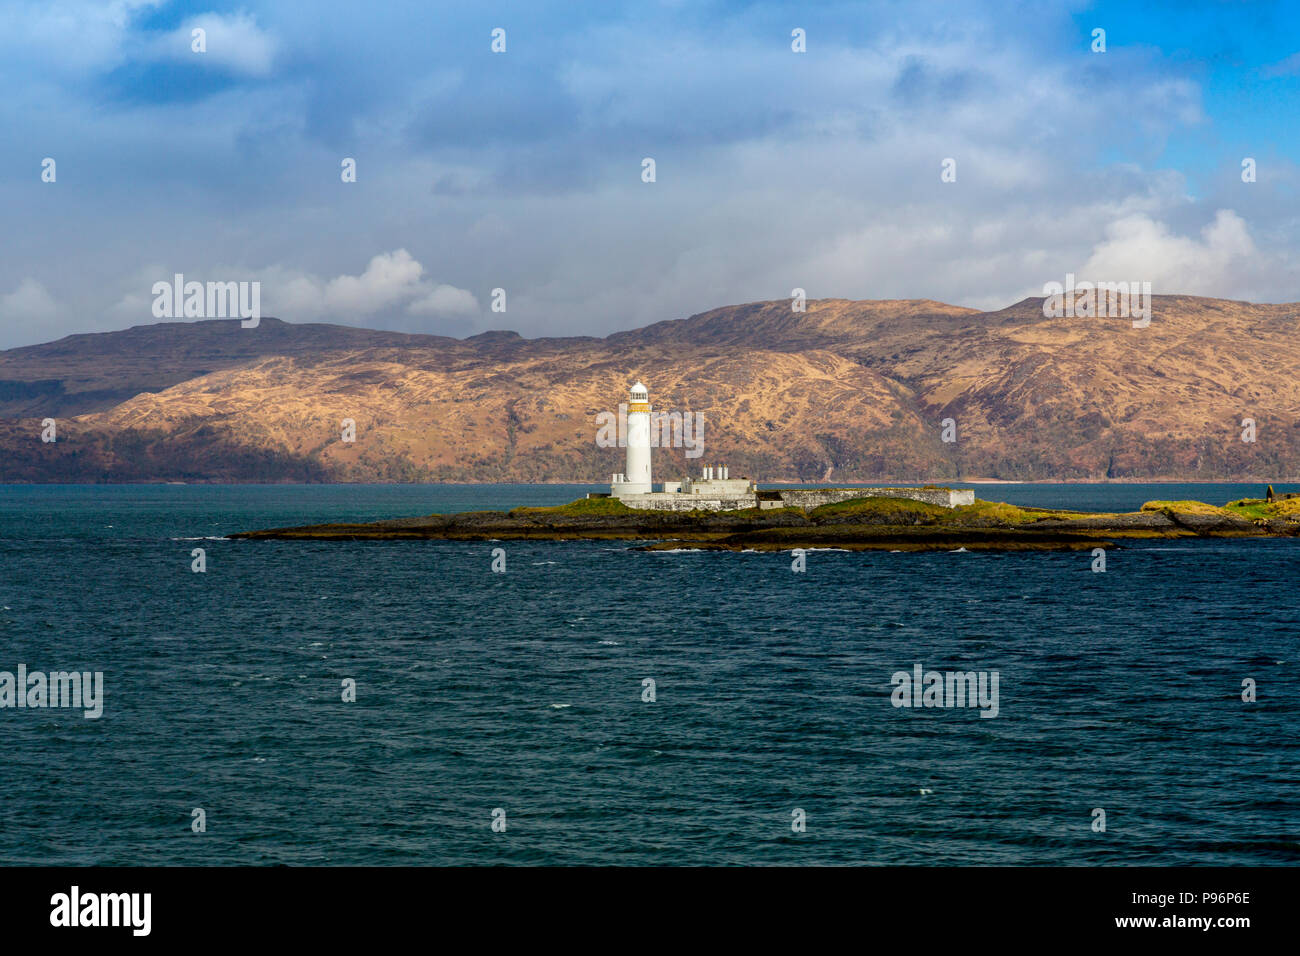 Lismore faro sul piccolo isolotto di Eilean Musdile è una visione comune da Oban - Mull il traghetto o le navi che entrano o lasciano il suono di Mull. Foto Stock